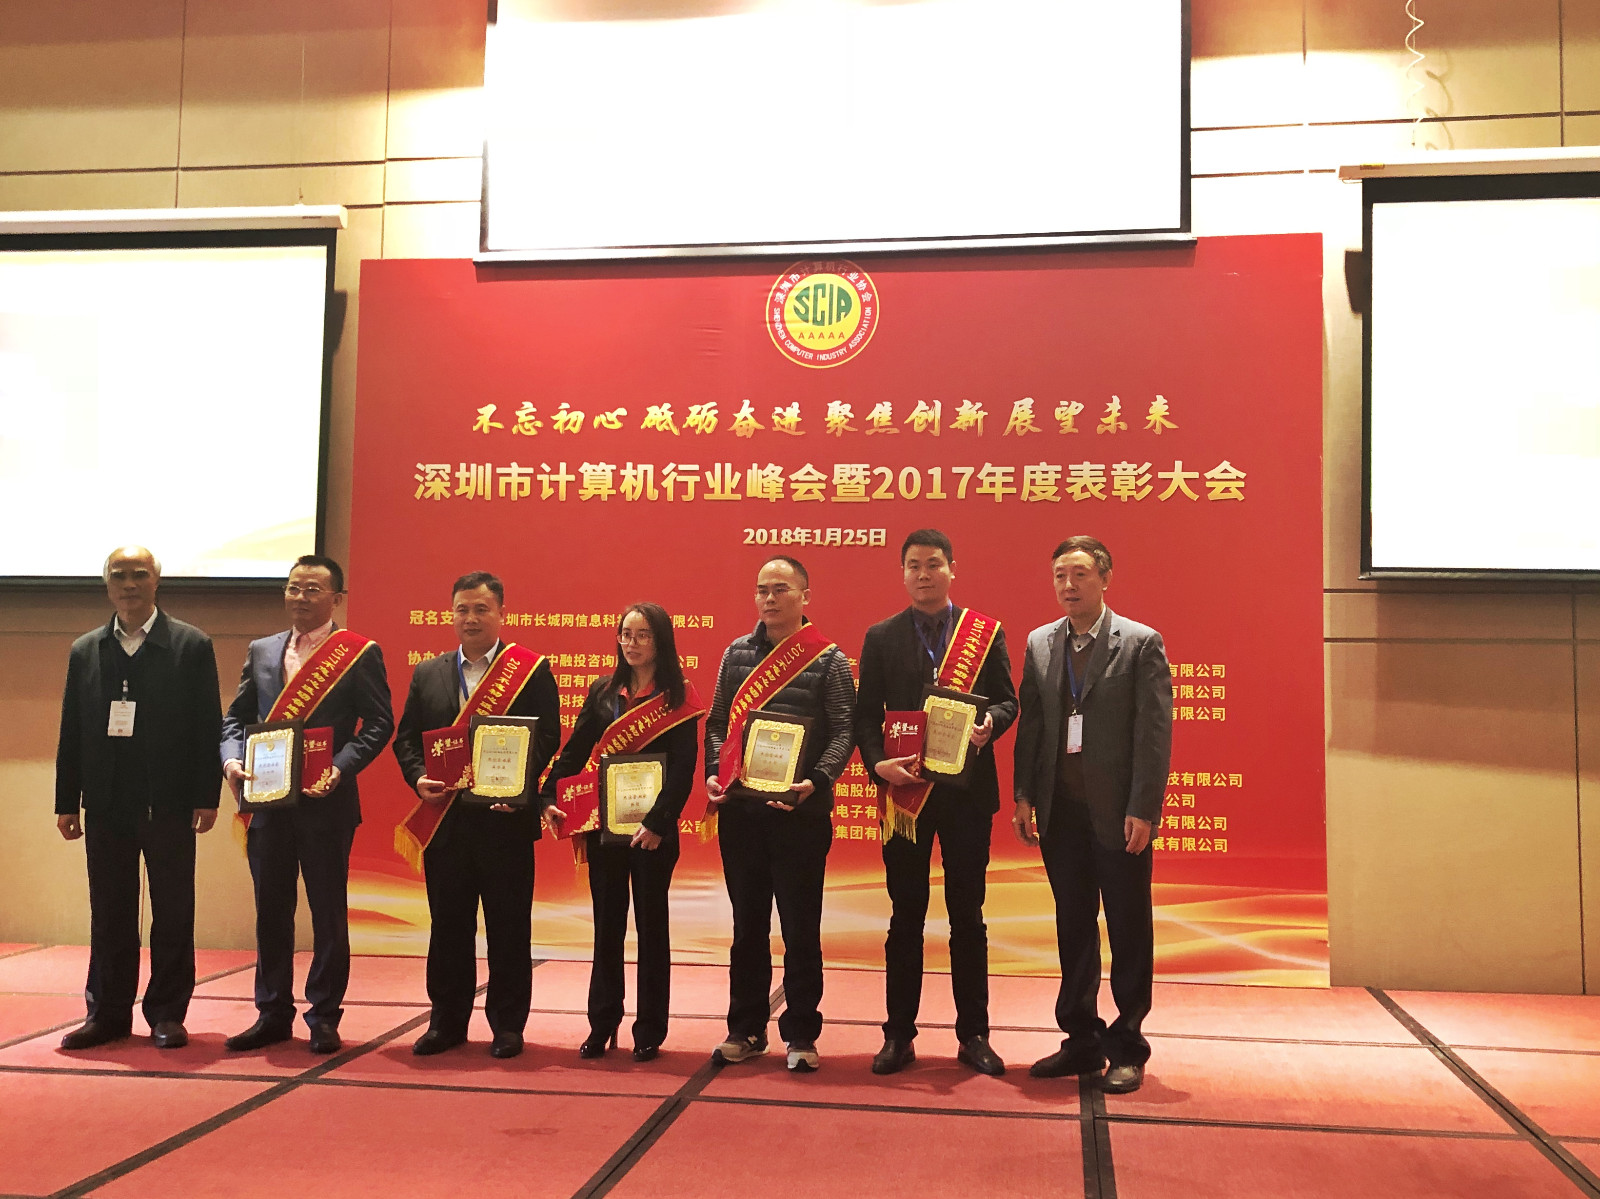 犀牛云受邀参加深圳市计算机行业峰会暨2017年度表彰大会